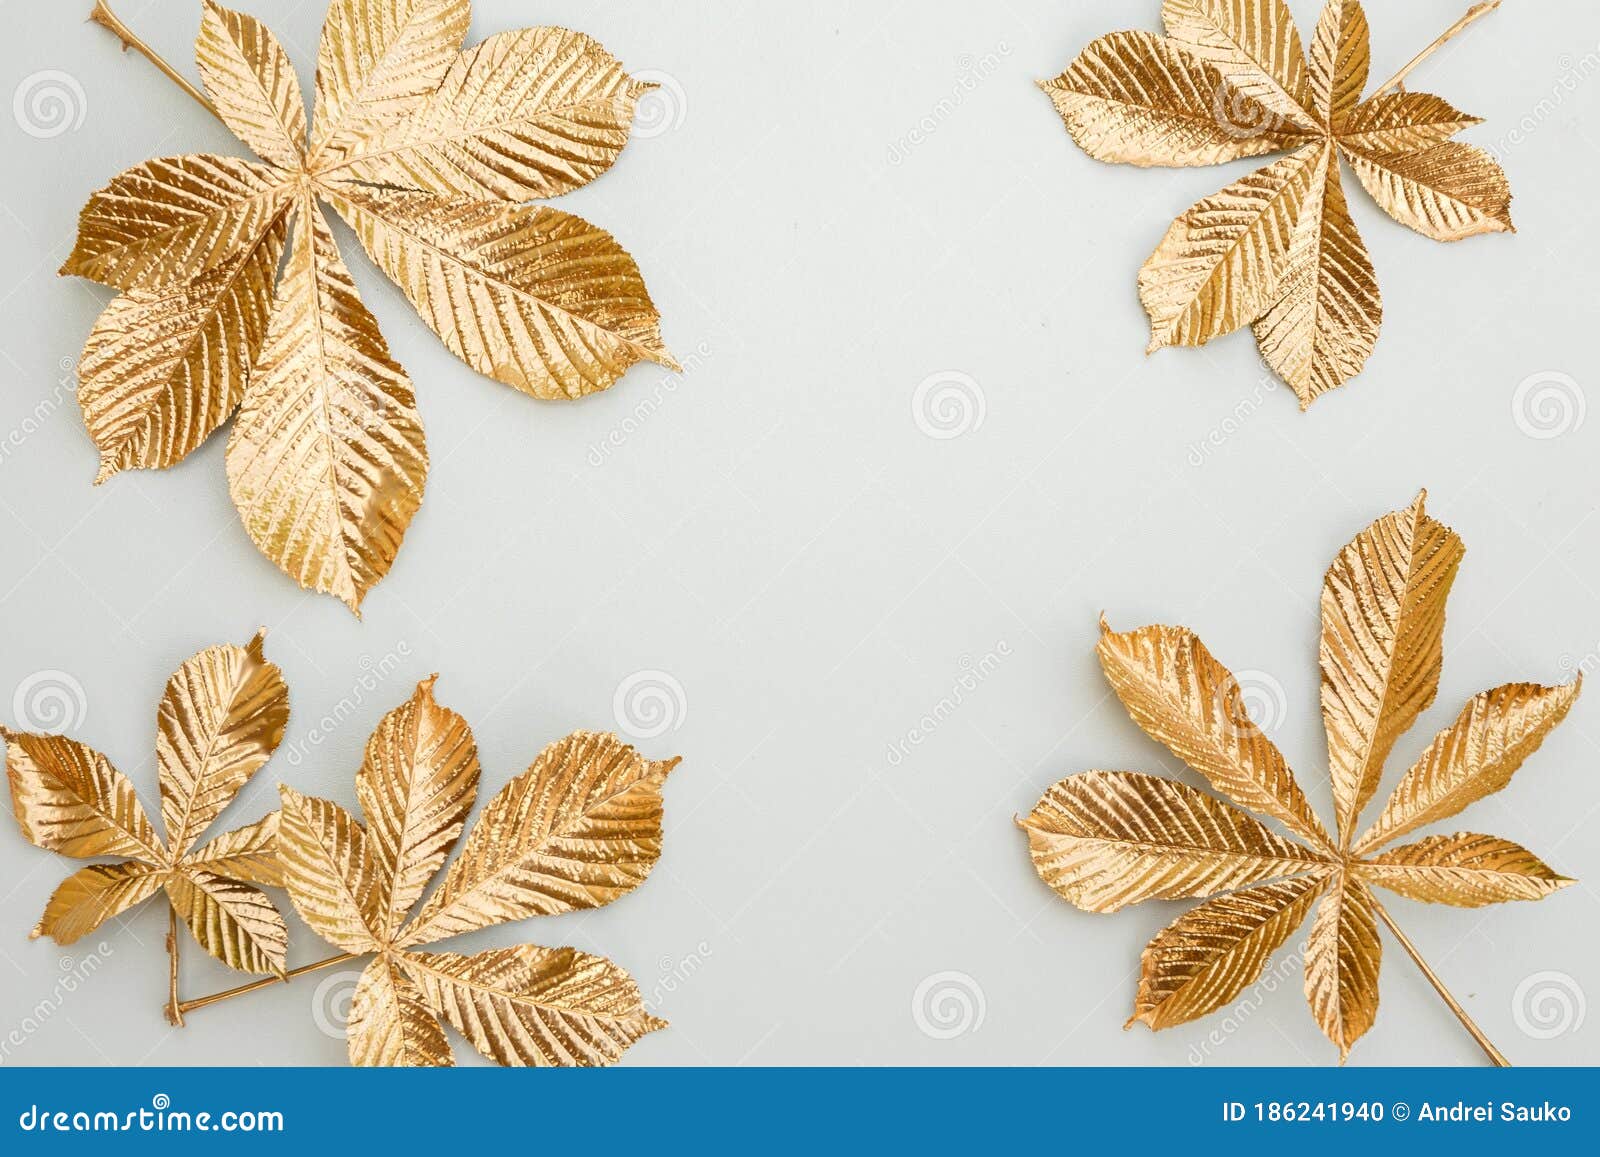 Hojas de hojas doradas 200 hojas de imitación de hojas doradas hojas plateadas para manualidades decoración de proyectos artísticos 